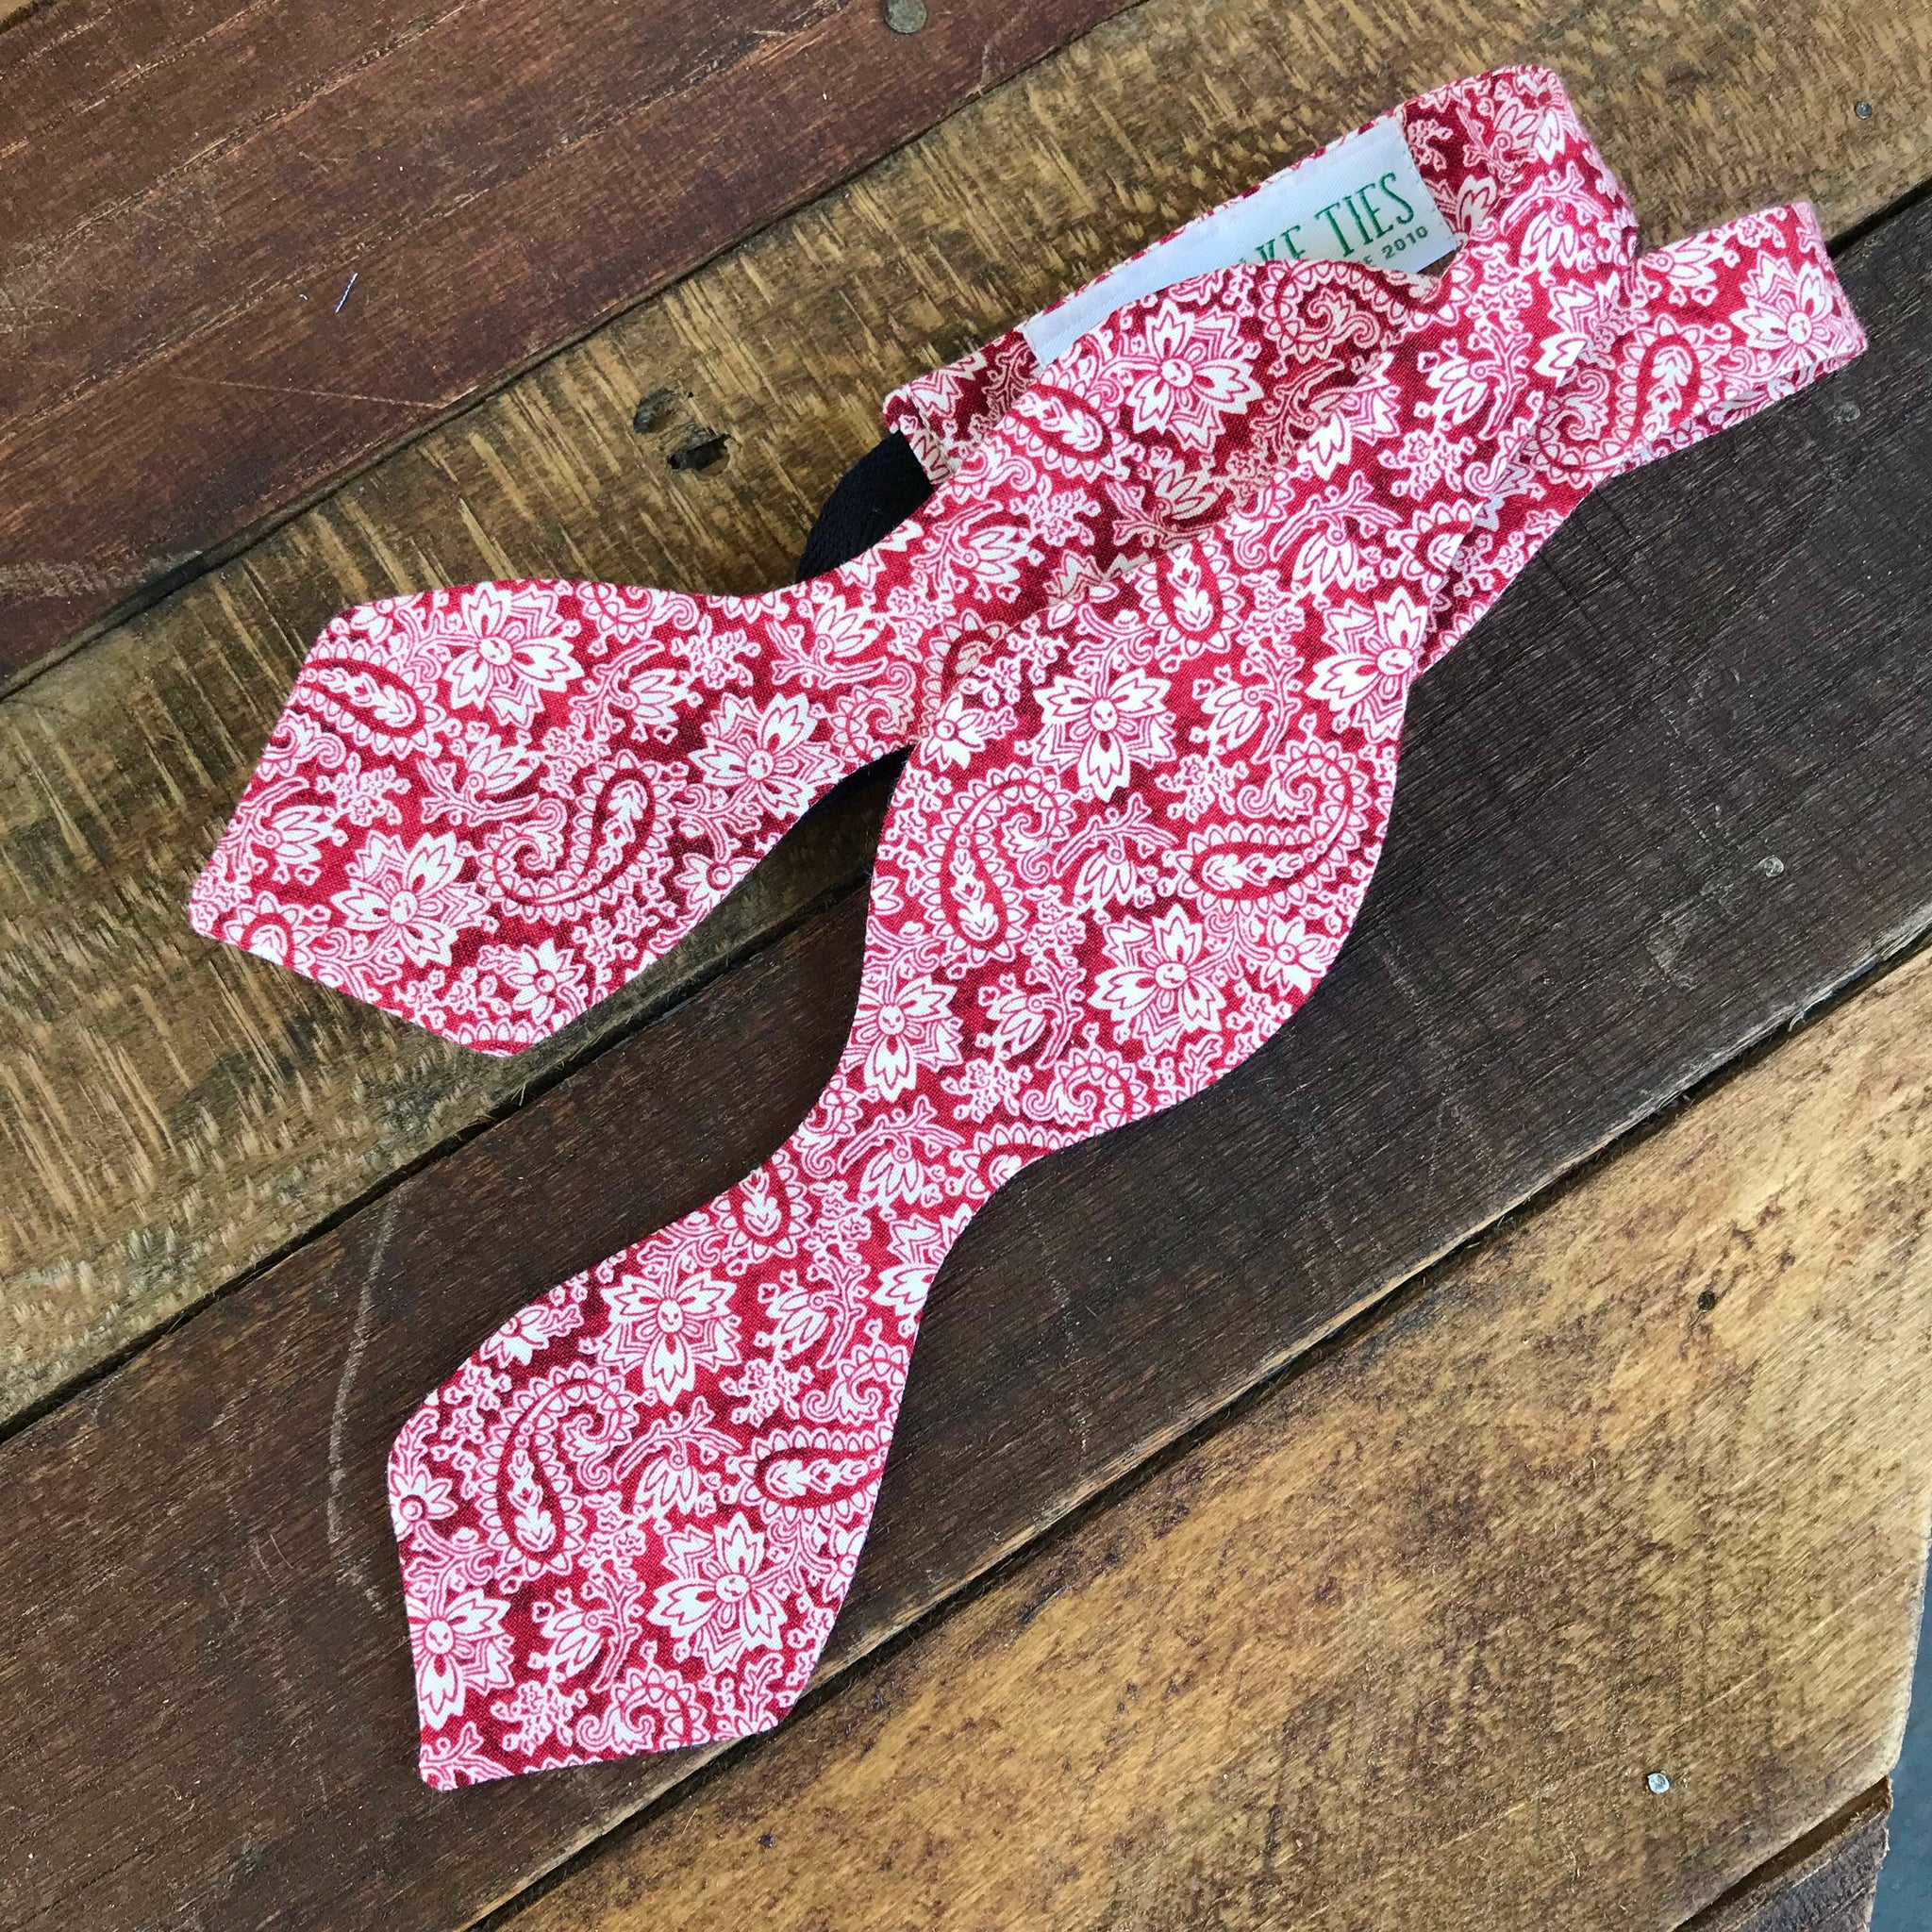 Red Kentucky Bow Tie – Peake Ties